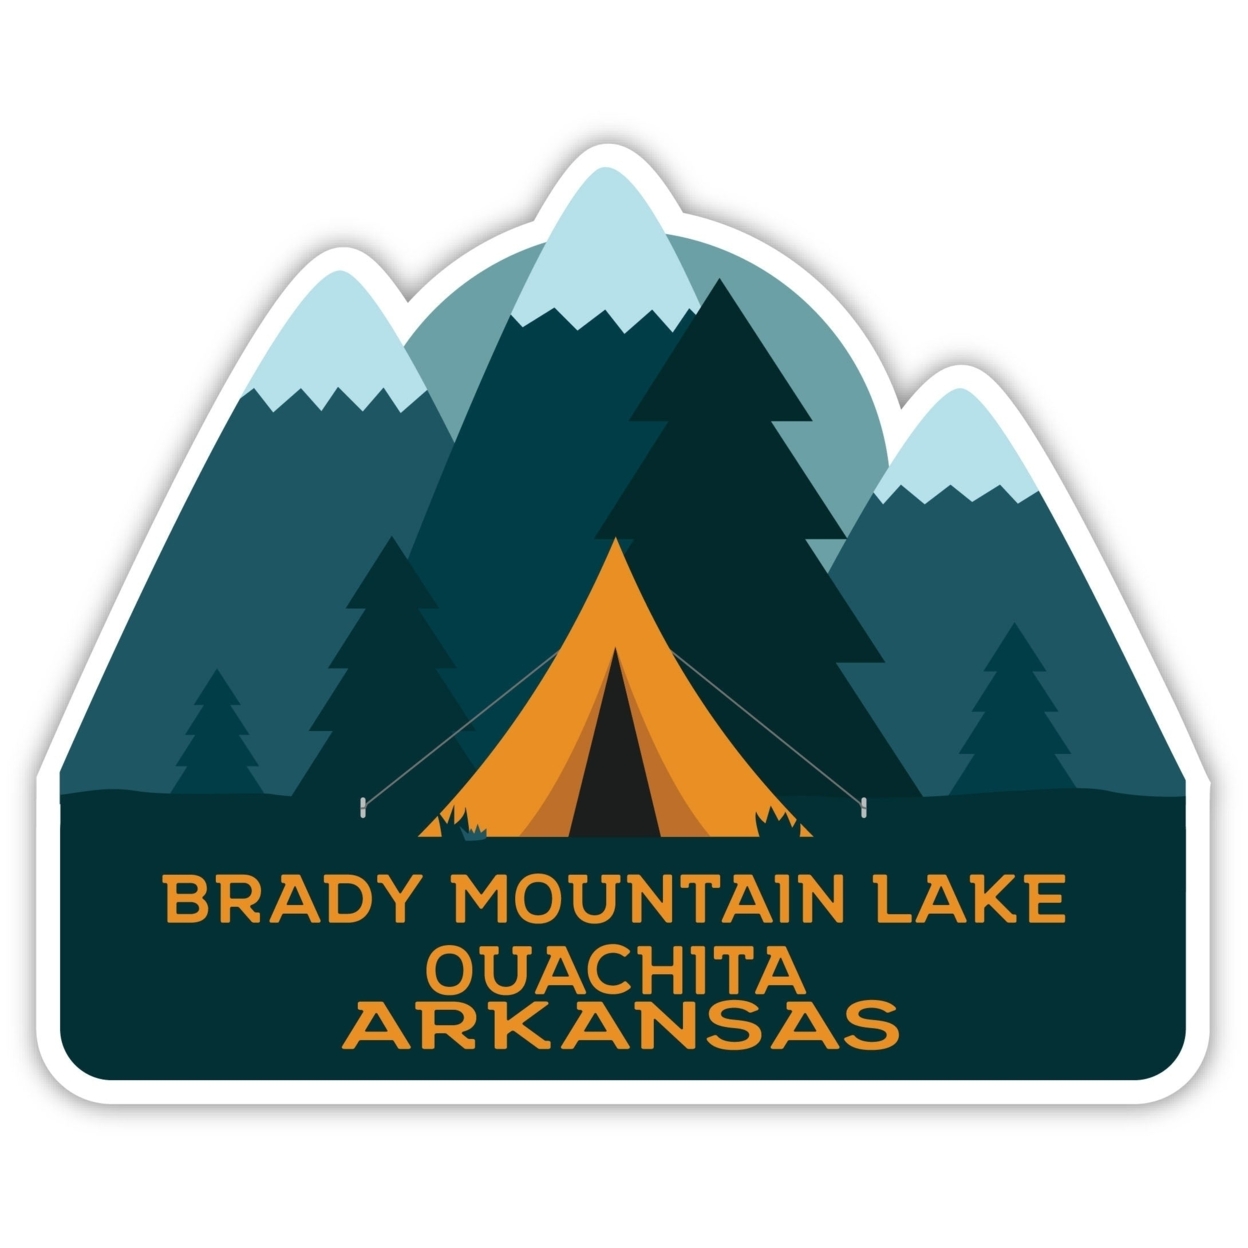 Brady Mountain Lake Ouachita Arkansas Souvenir Decorative Stickers (Choose Theme And Size) - Single Unit, 4-Inch, Tent